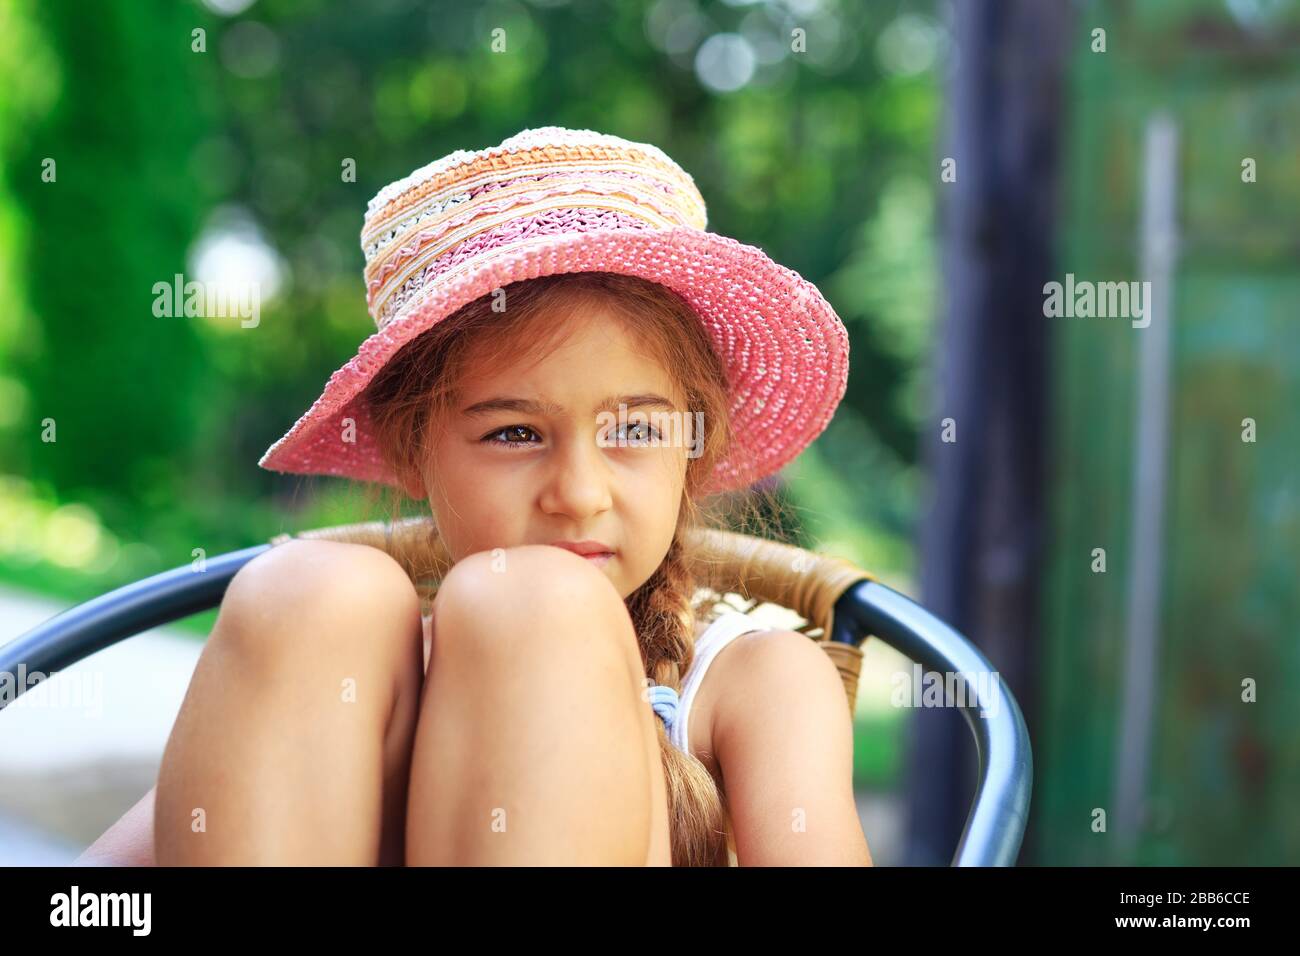 Portrait des süßen traurigen kleinen Mädchens auf dem großen Hut, das am Sommertag traurig aussieht Stockfoto